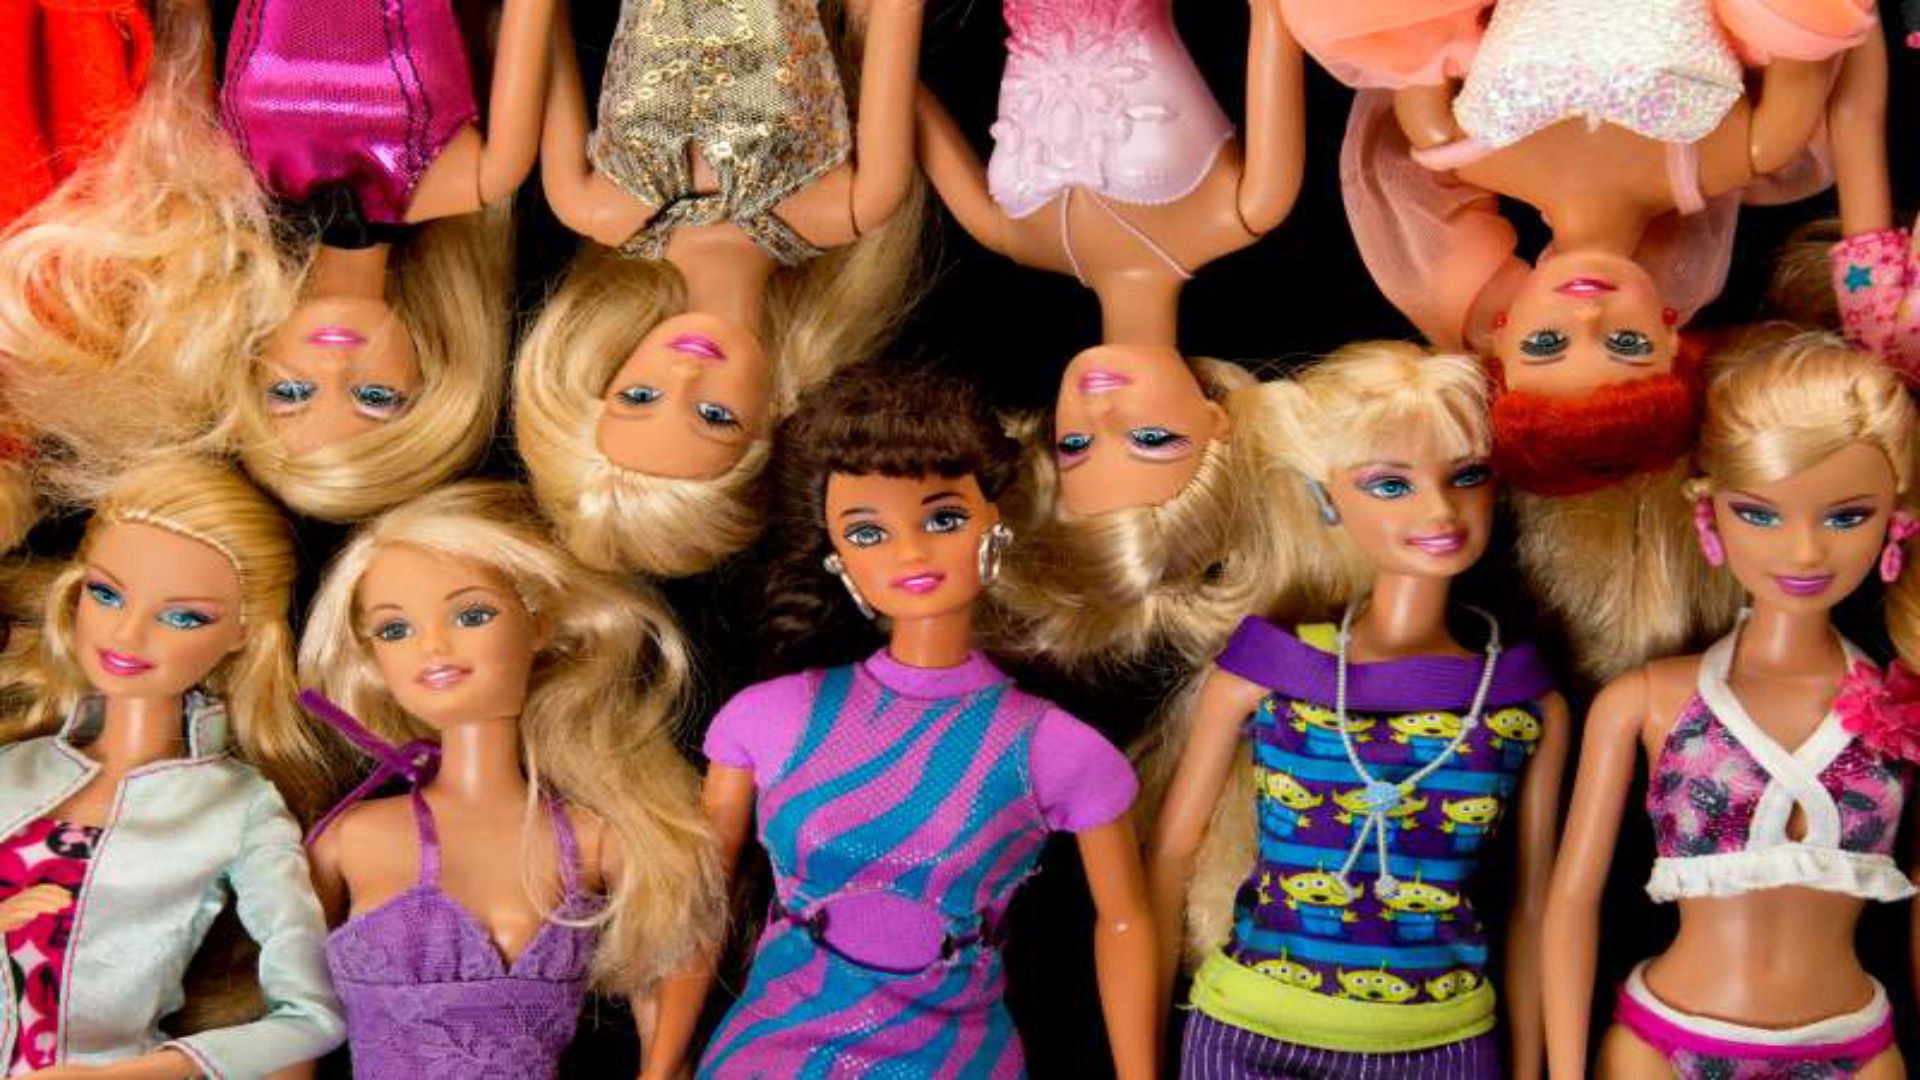 Barbie-nuket